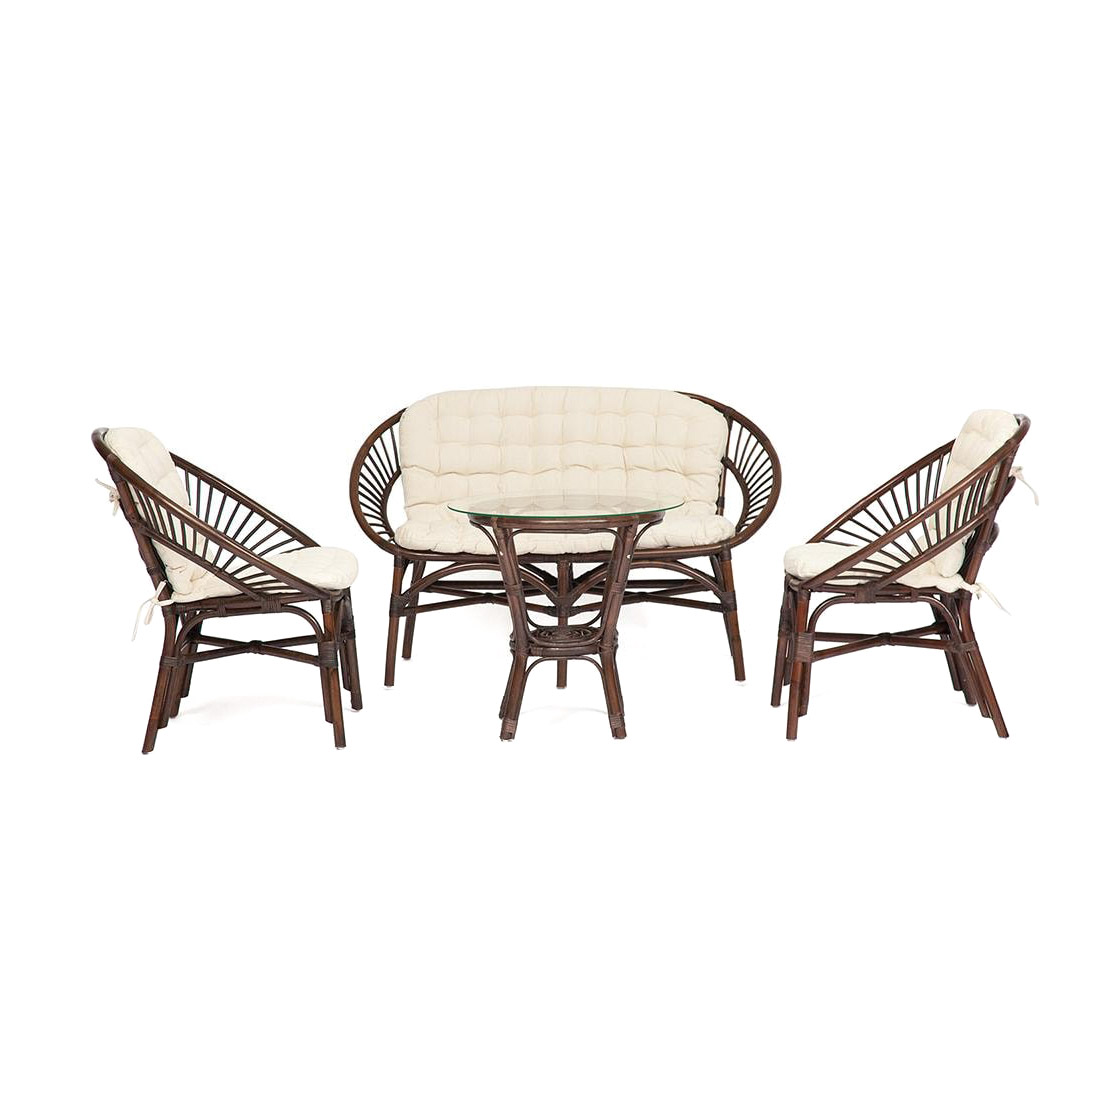 Комплект мебели TC ротанг 4 предмета, цвет коричневый кокос, размер 120х65х78 см - фото 1